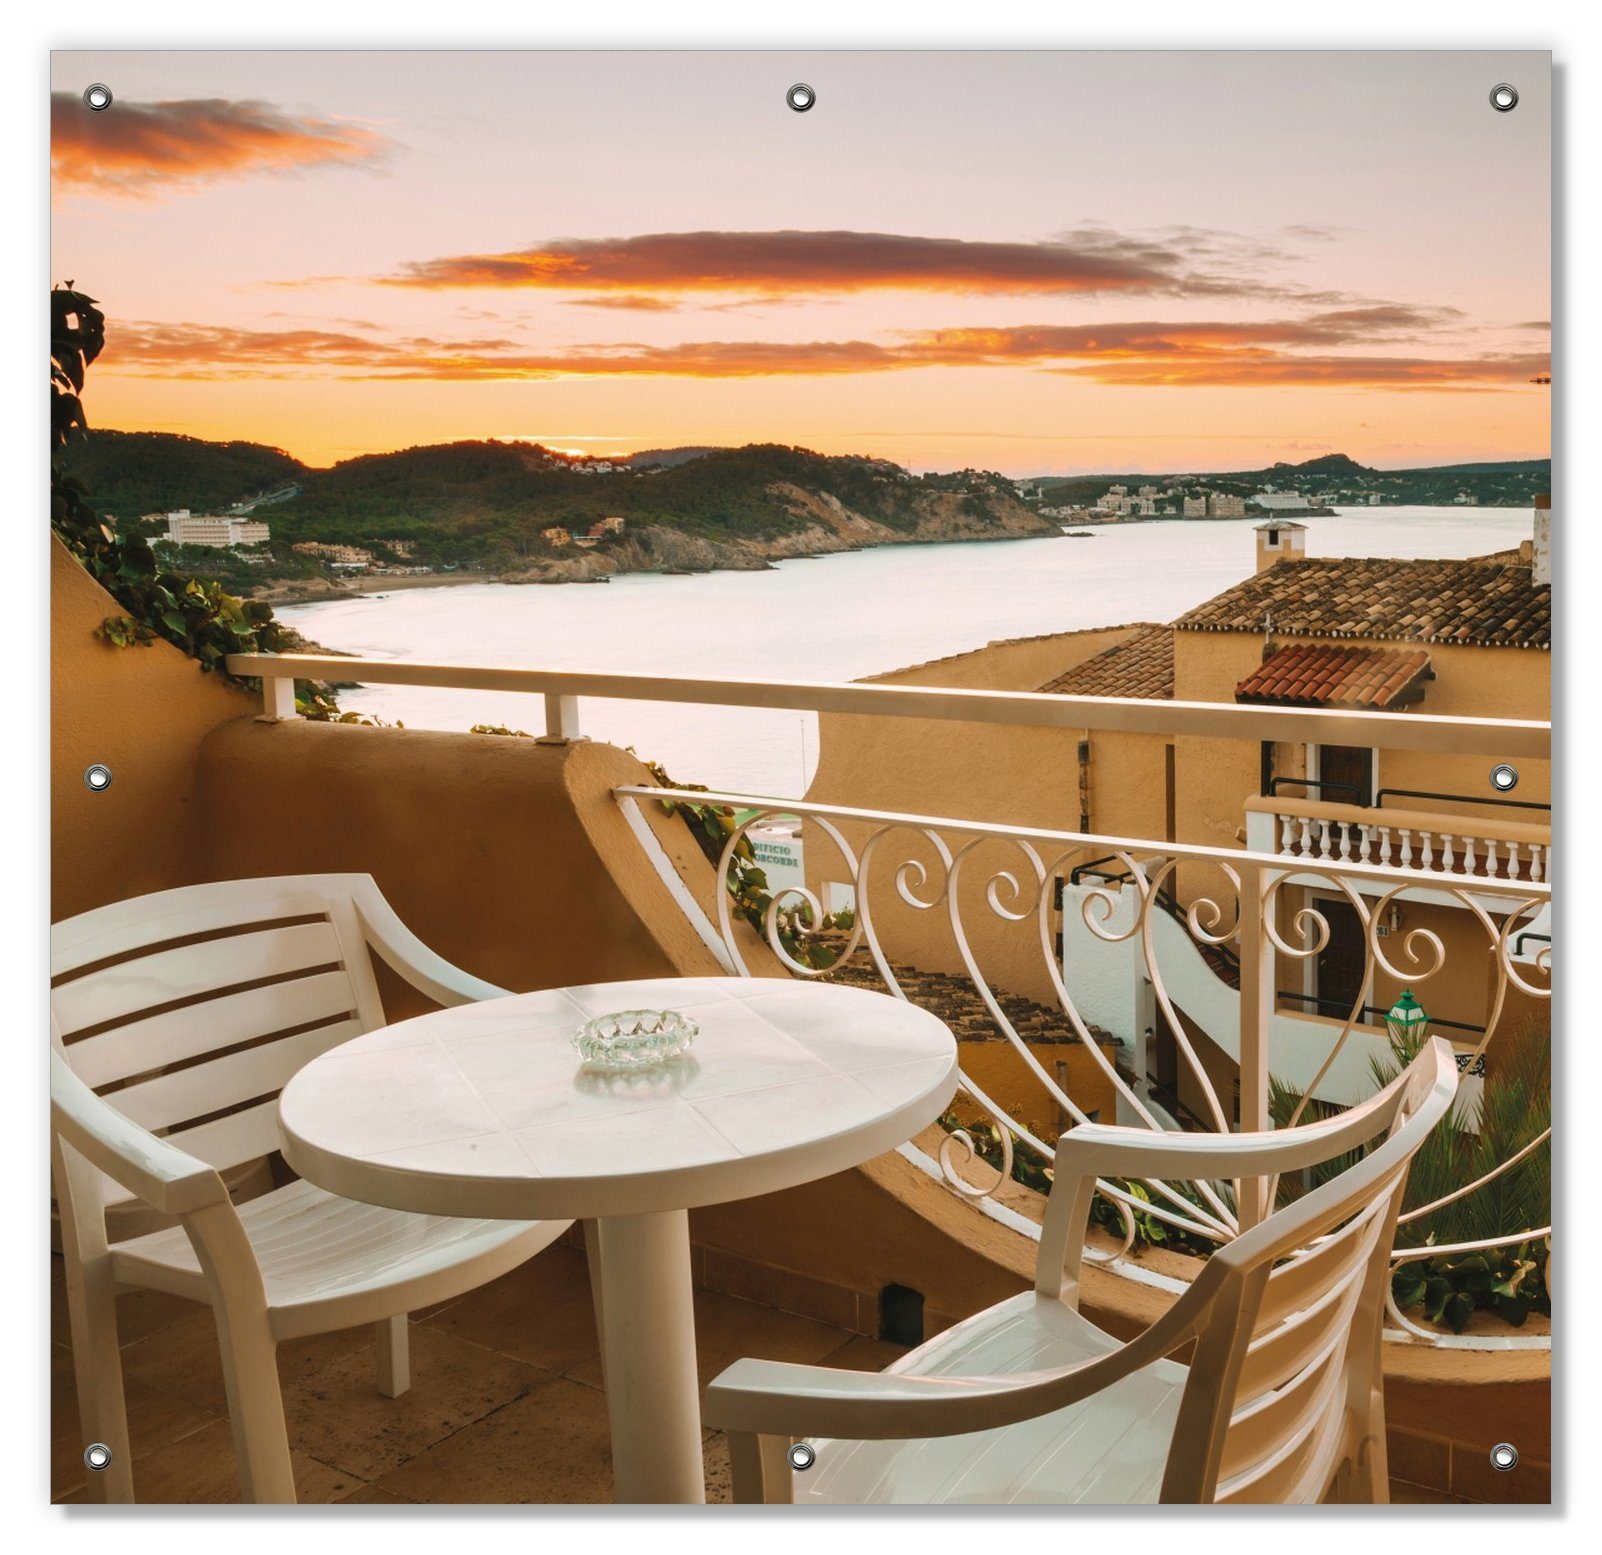 Sommer Spanien von in auf Wallario, blickdicht, Meer, einer Sonnenschutz das und Terrasse mit Ausblick schönen wiederablösbar Saugnäpfen, wiederverwendbar -